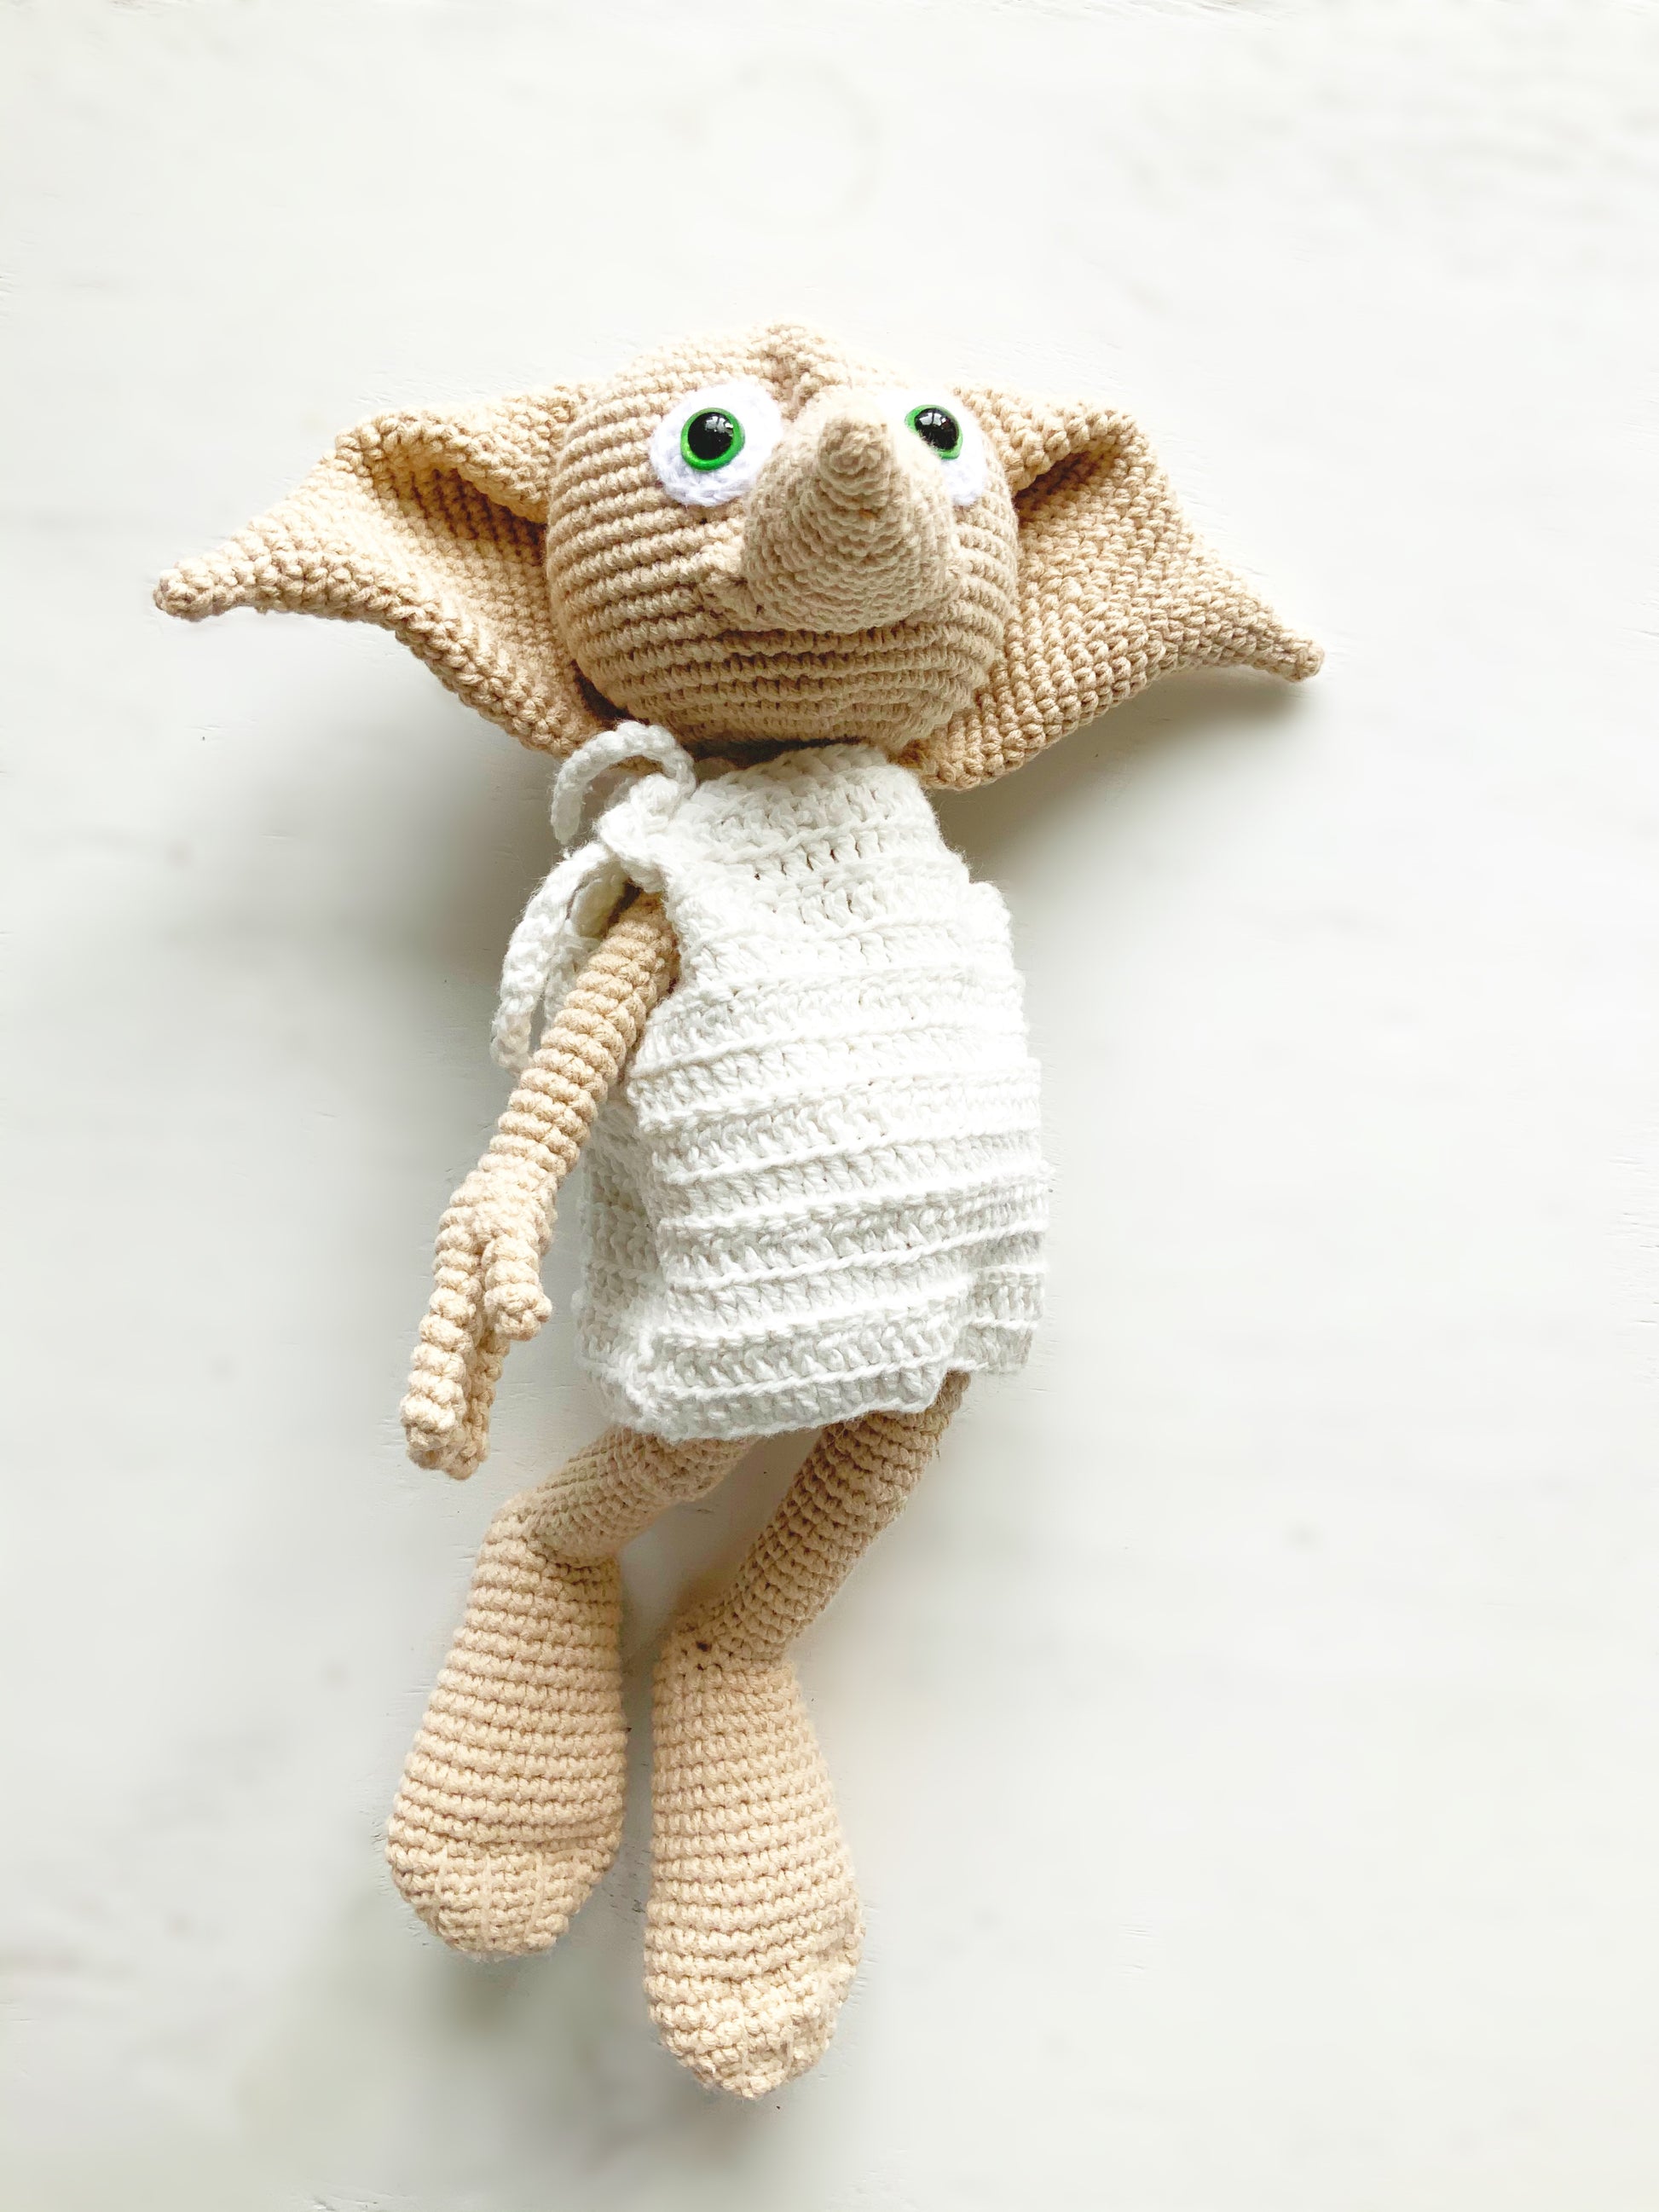 Dobby™ Crochet Kit